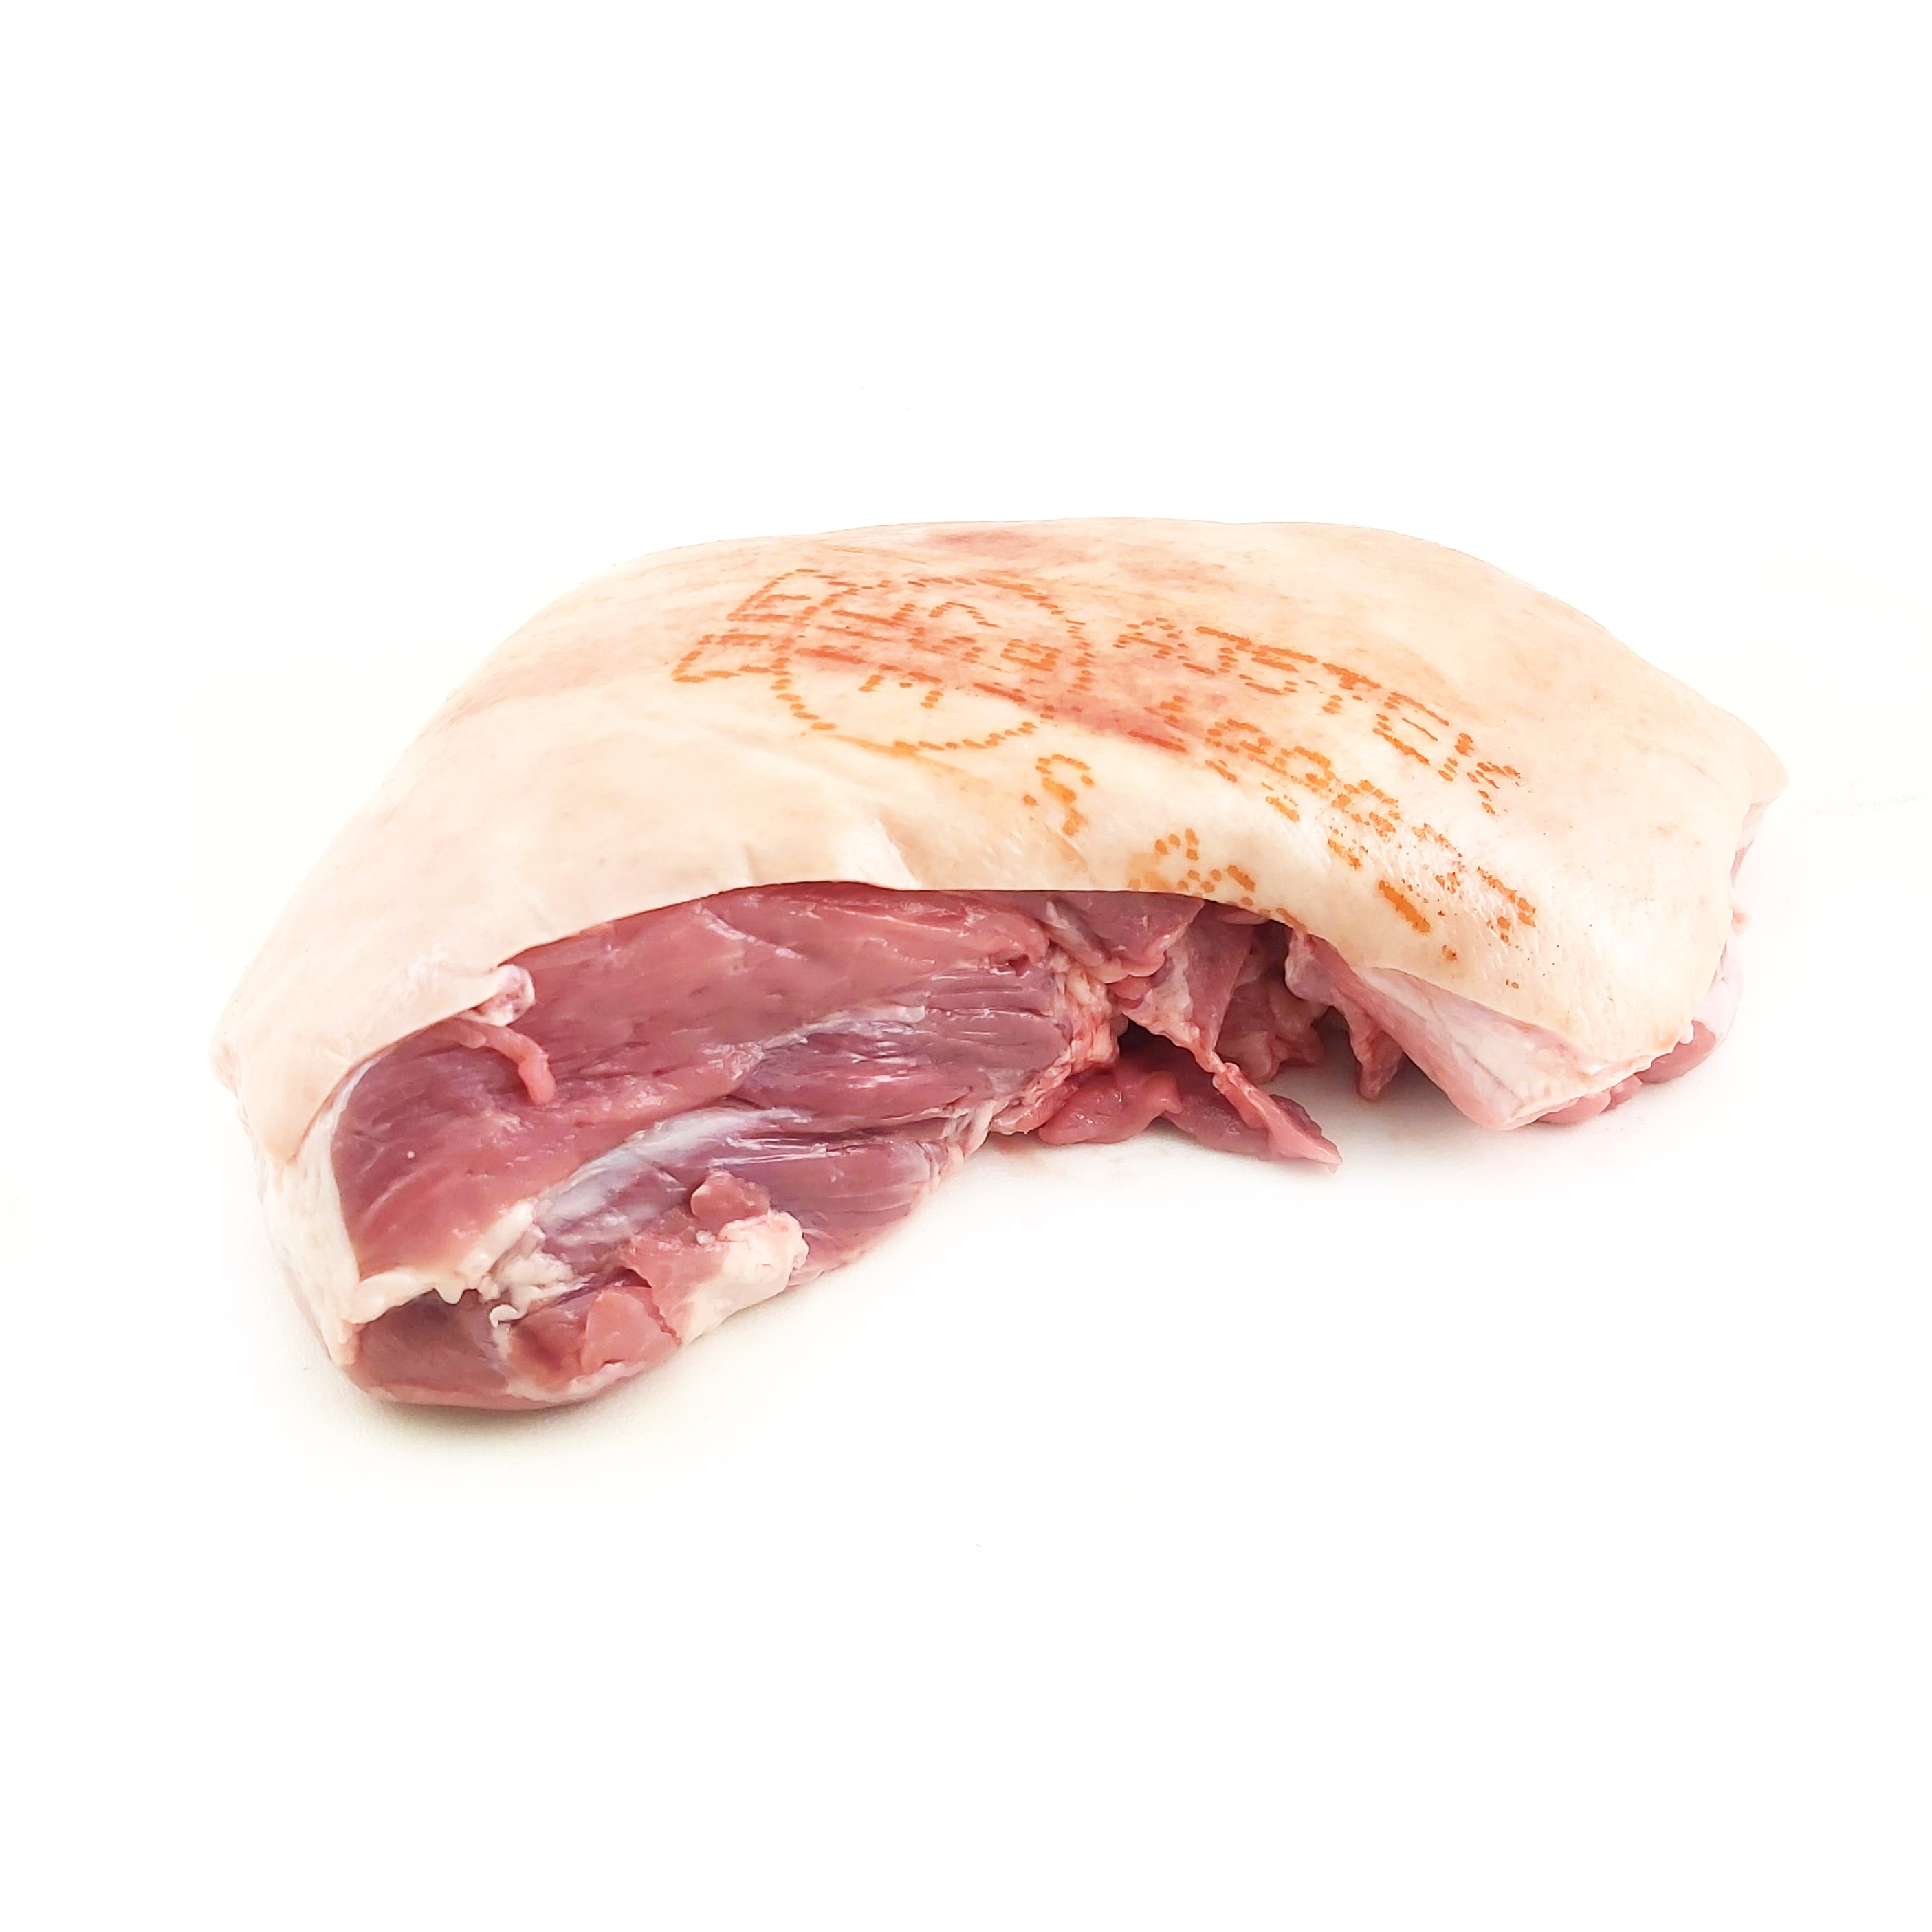 Frozen Organic Dutch Boneless Pork Shoulder Rind On